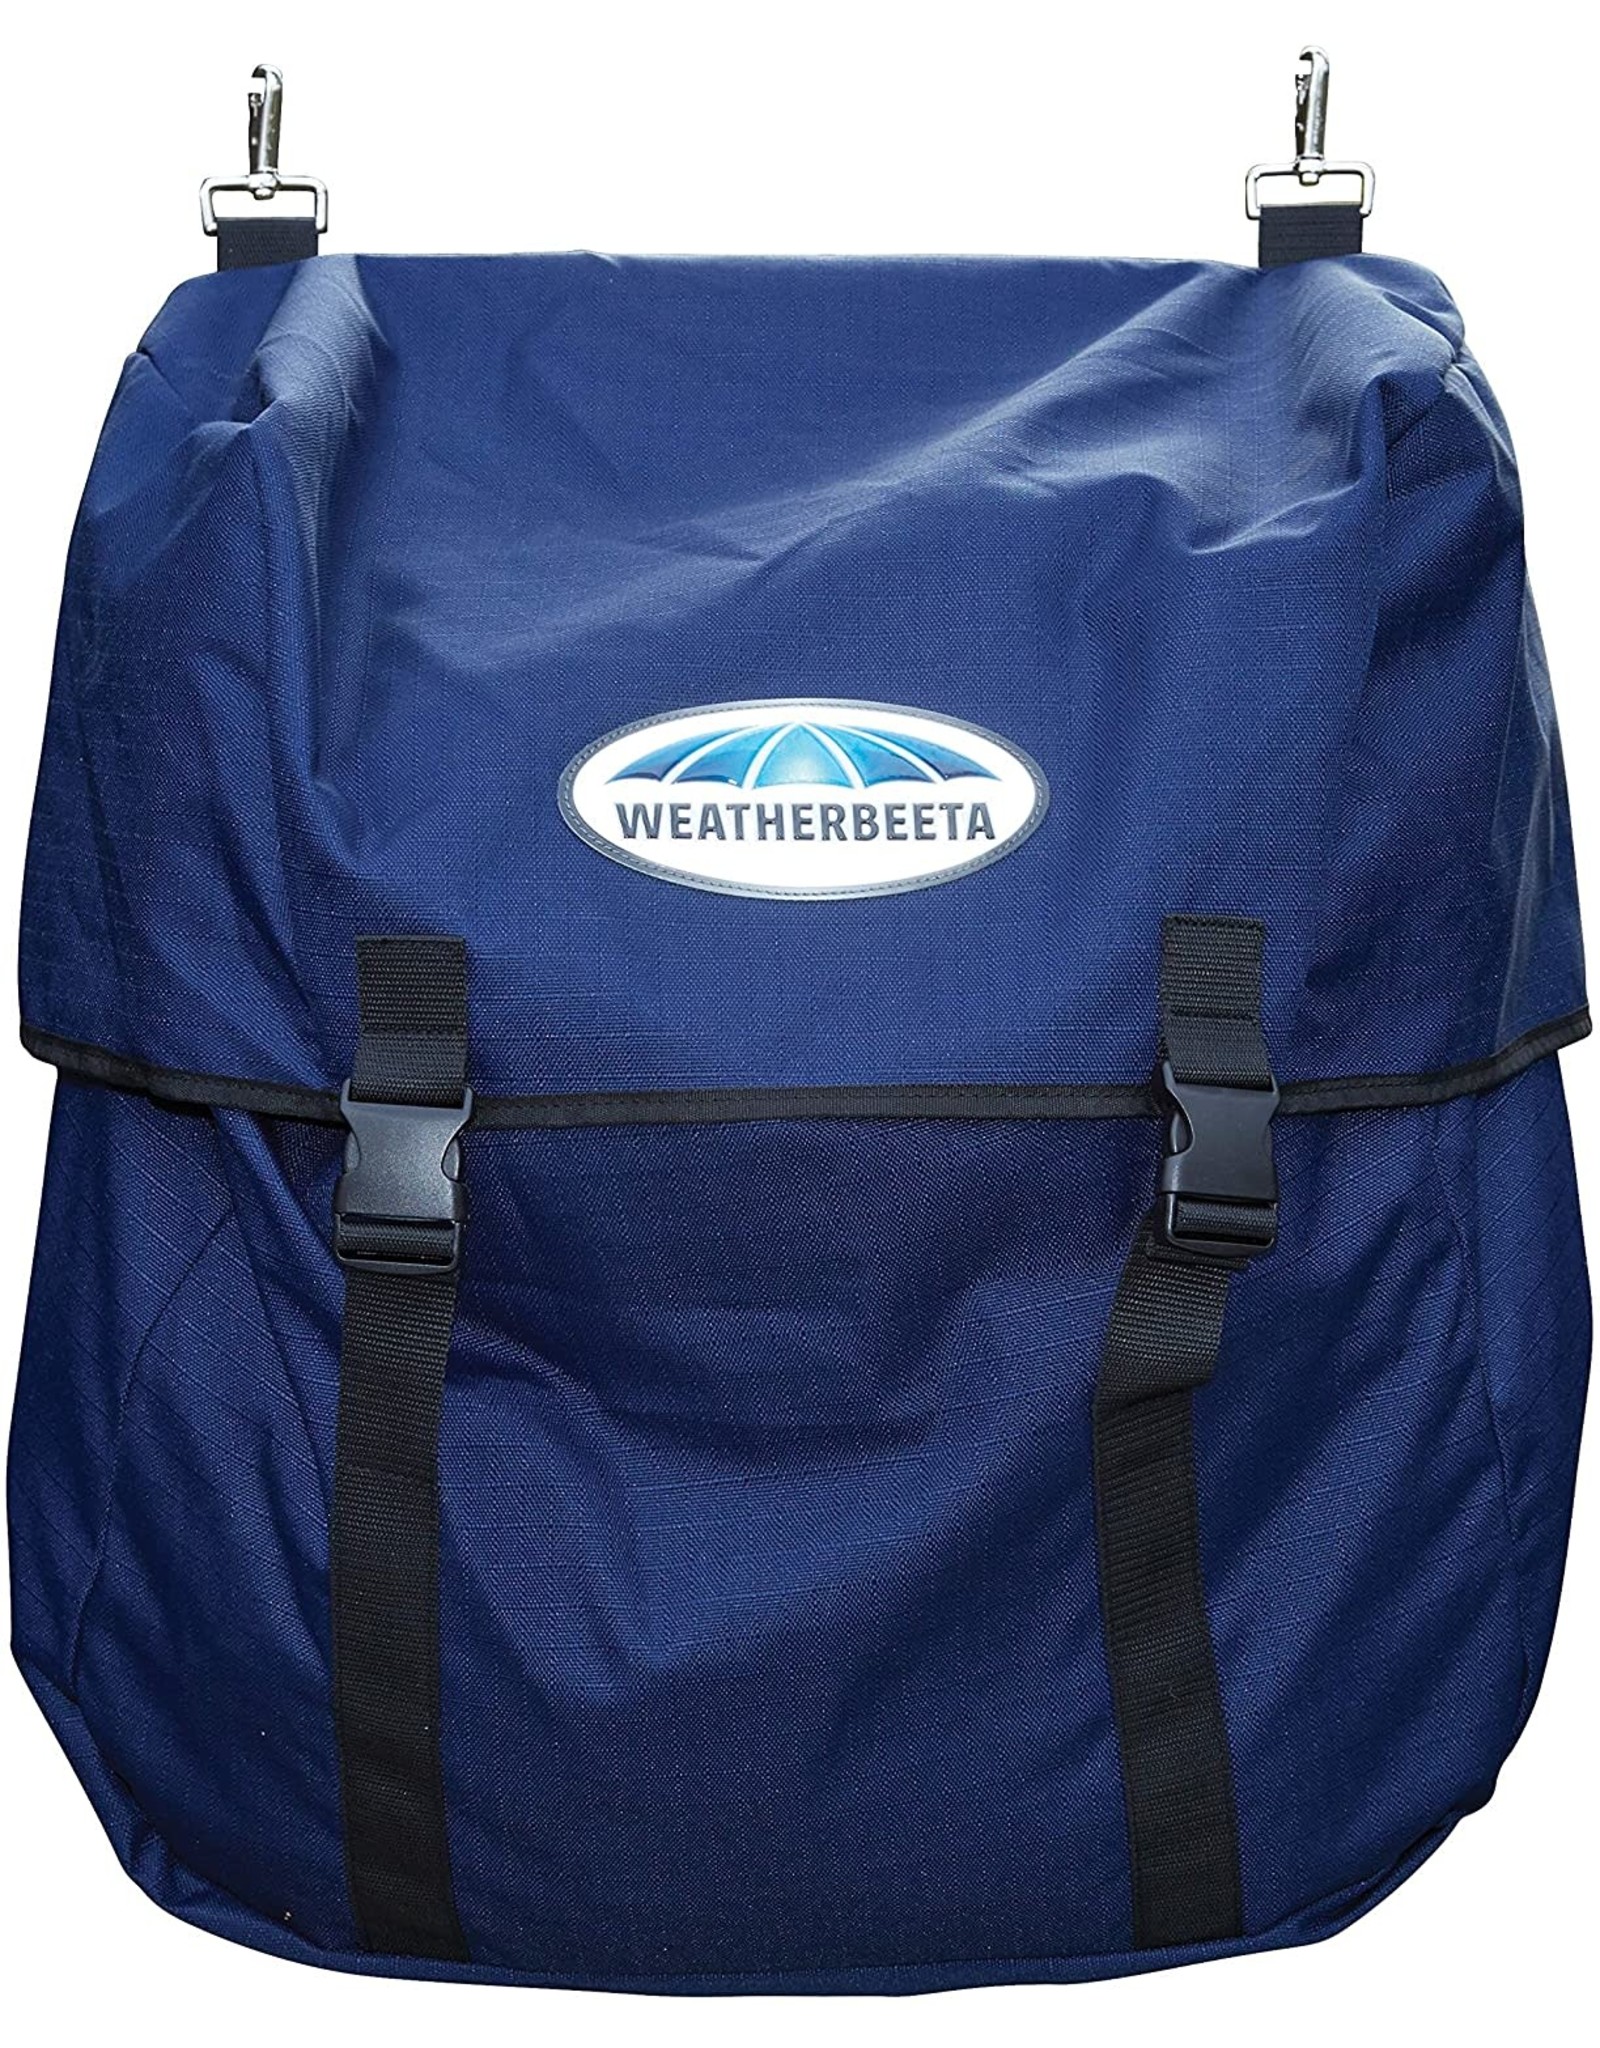 WEATHERBEETA Blanket Storage Bag Navy